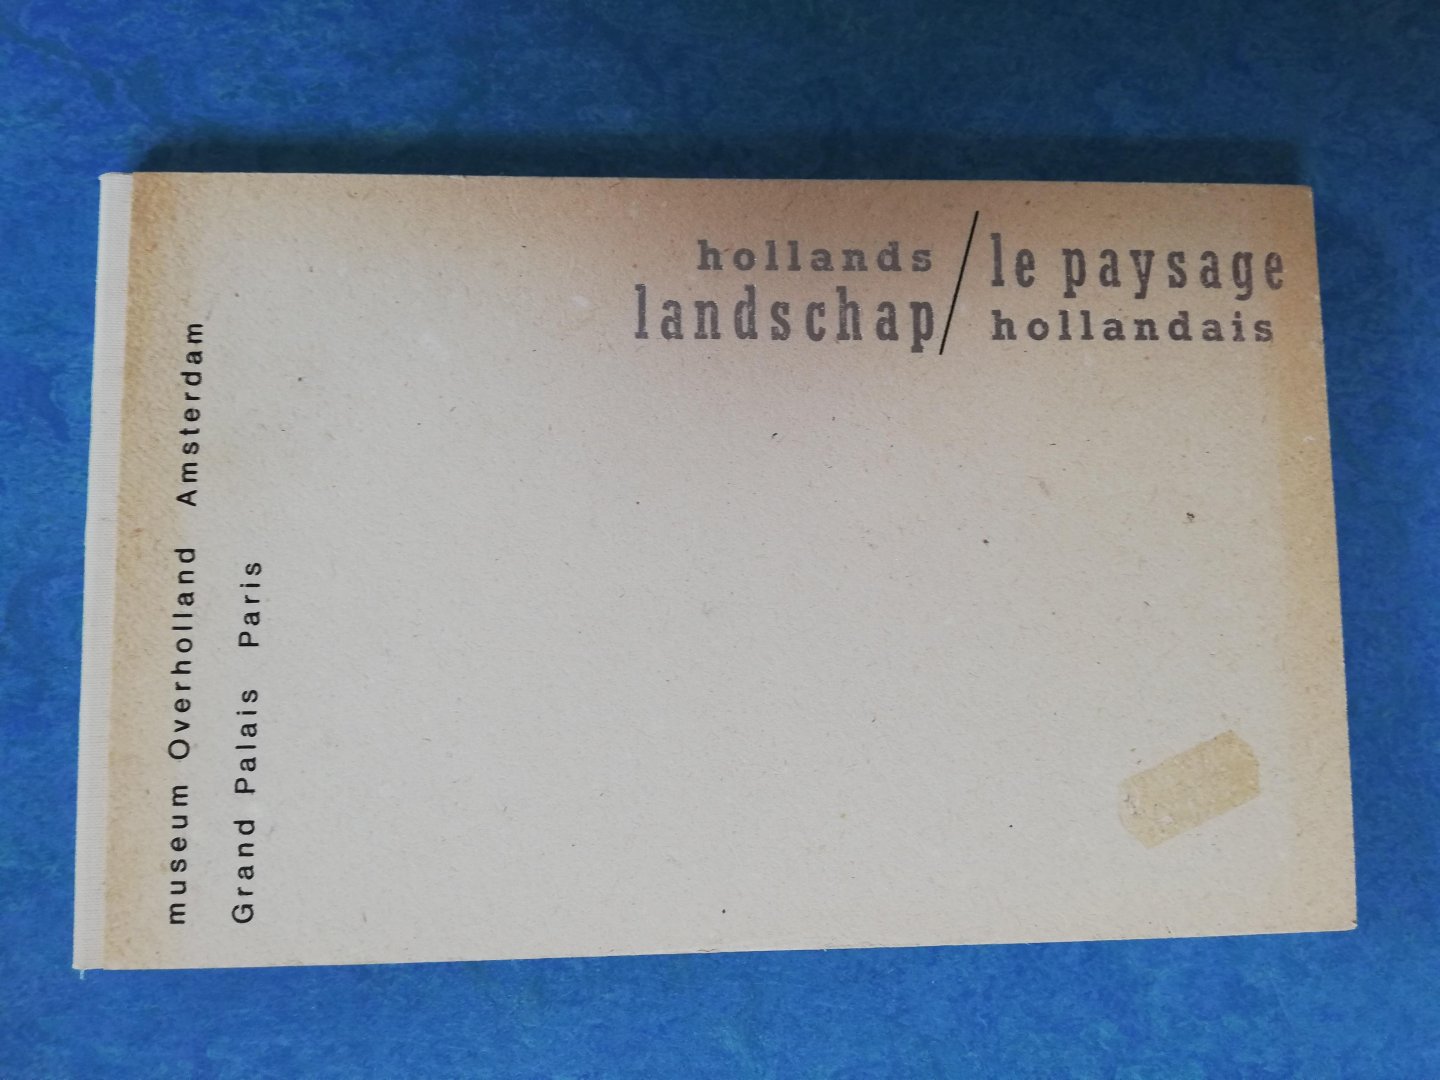  - Hollands Landschap, Nederlandse inzending in 1987 op eerste Festival International du dessin Contemporain